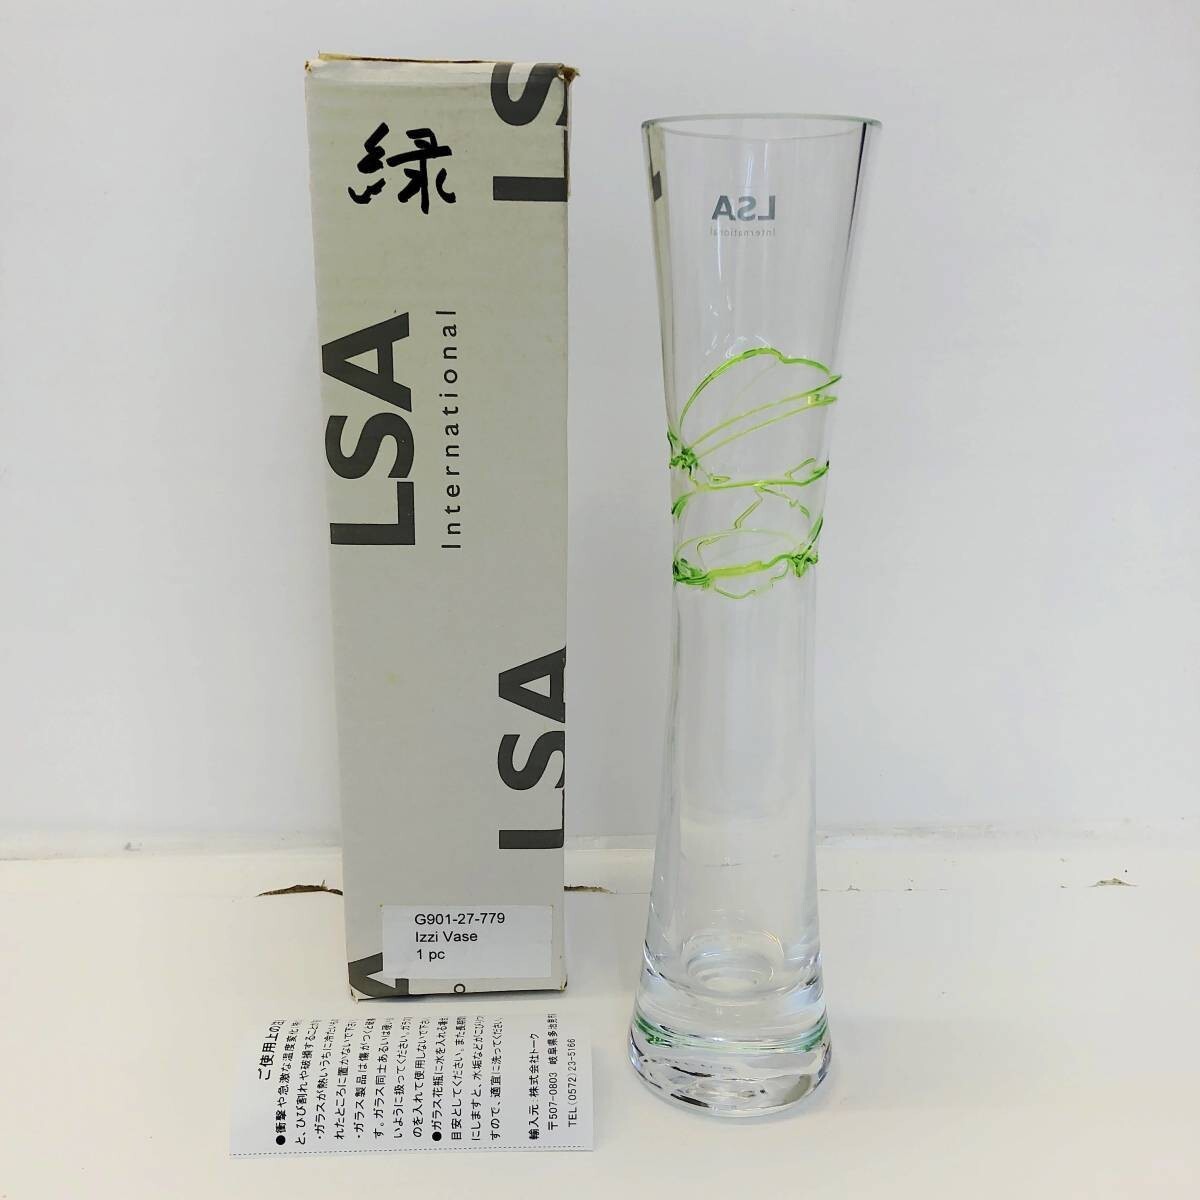 新款5.Green LSA国际花瓶手工玻璃绿色Izzi花瓶27cm波兰制造G901-27, 家具, 内部的, 内饰配件, 花瓶